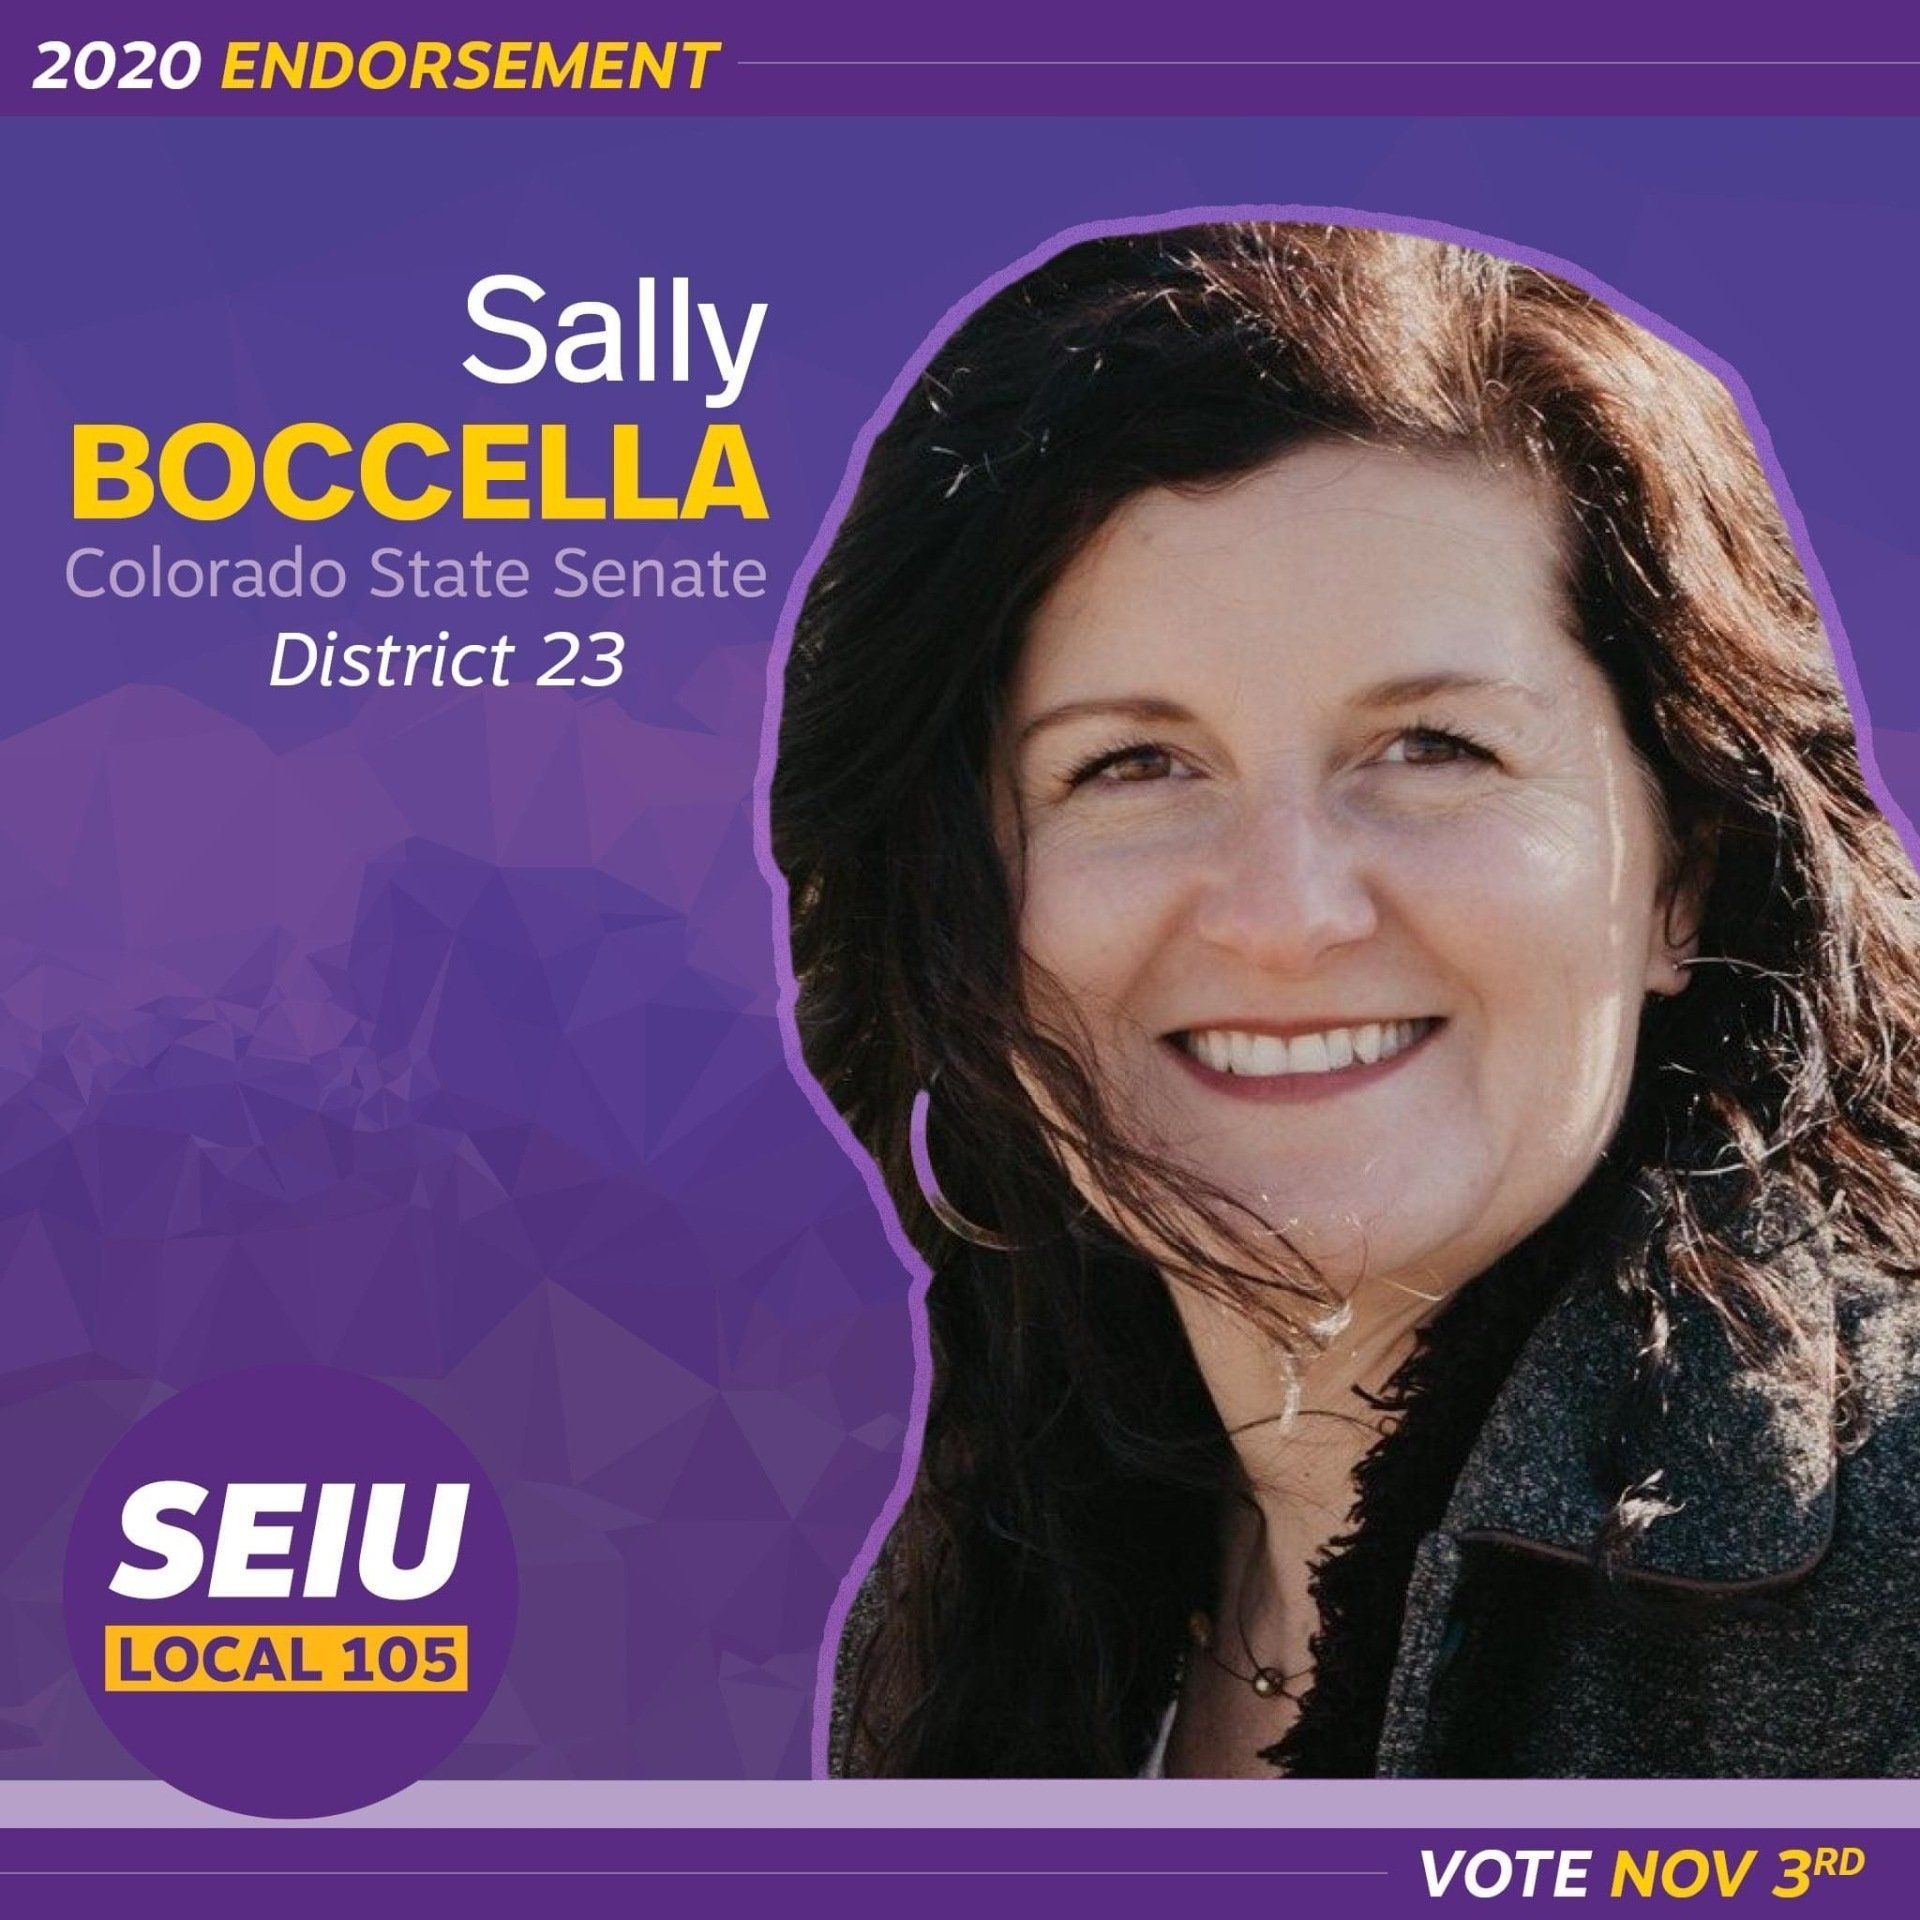 SEIU Local 105 endorses Sally Boccella for Colorado